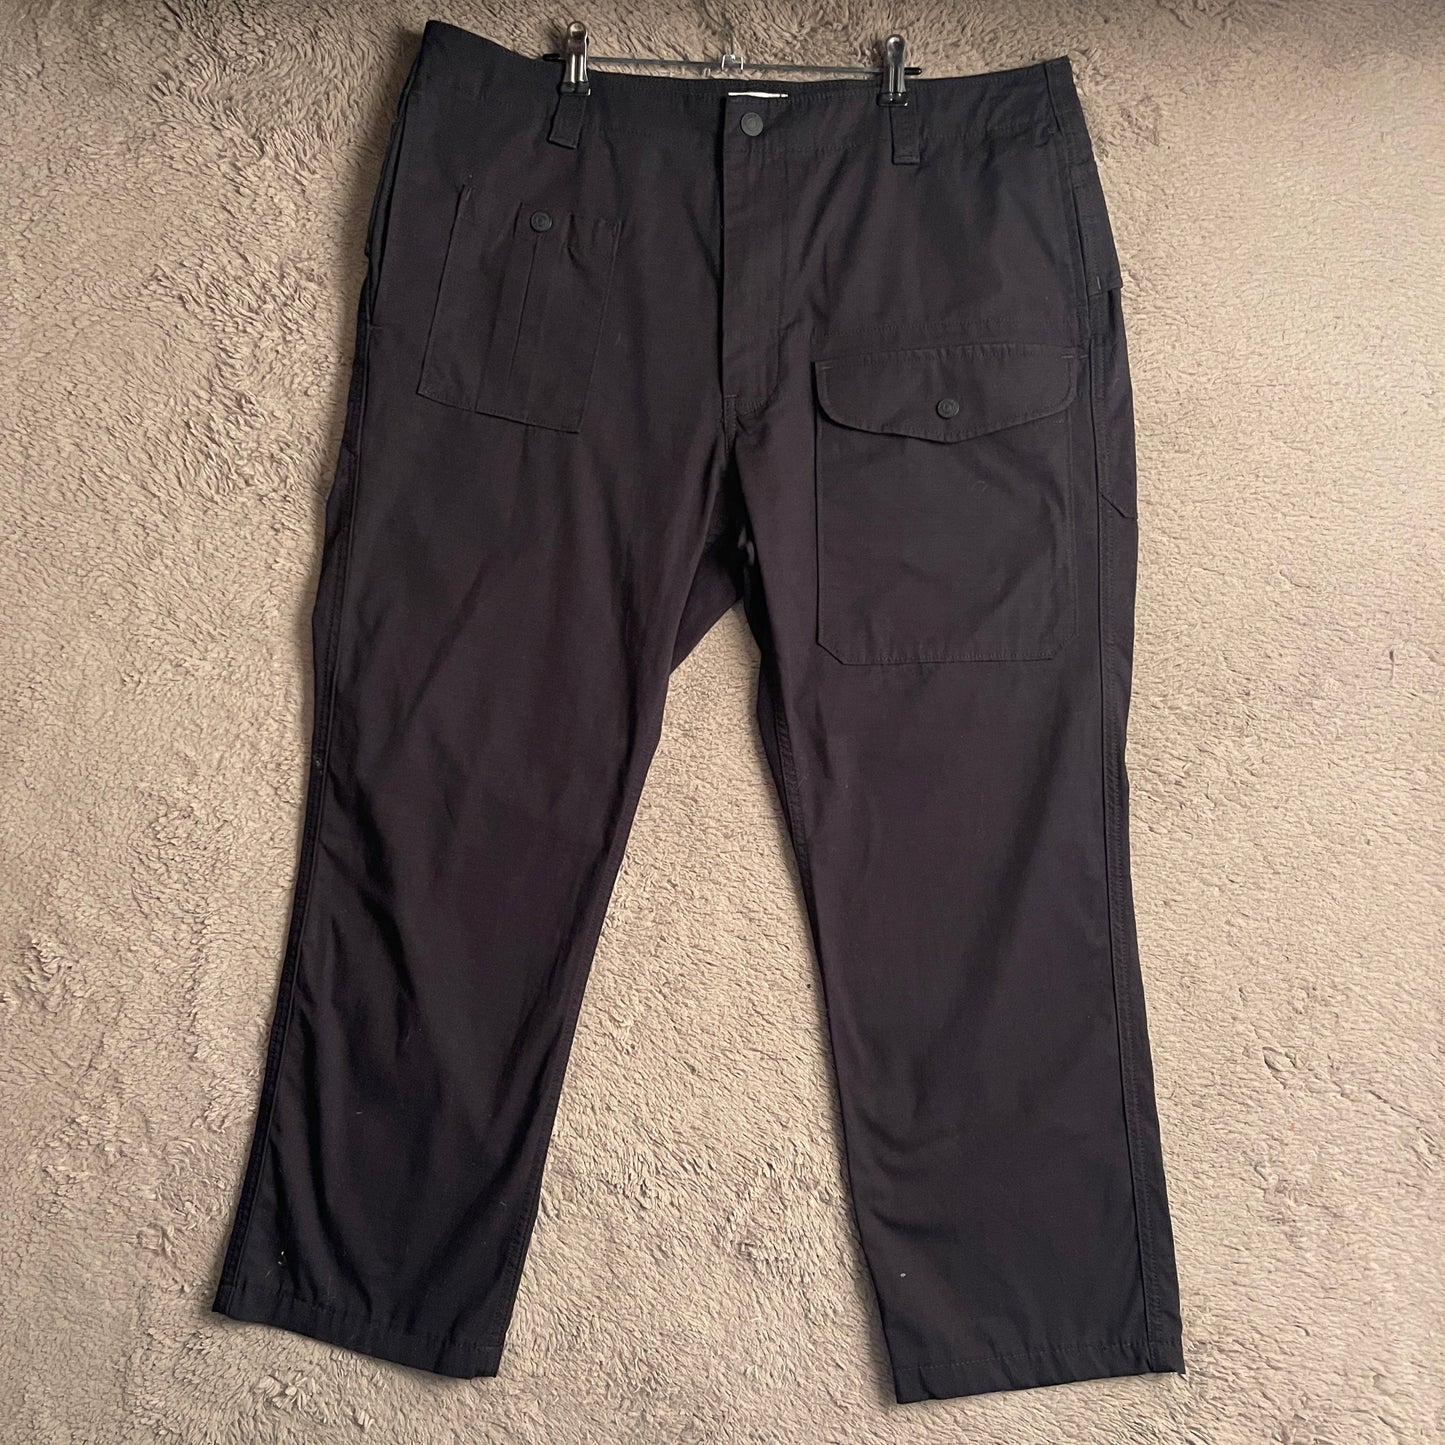 Levi Strauss & Co. Workwear Pants (W38xL38)